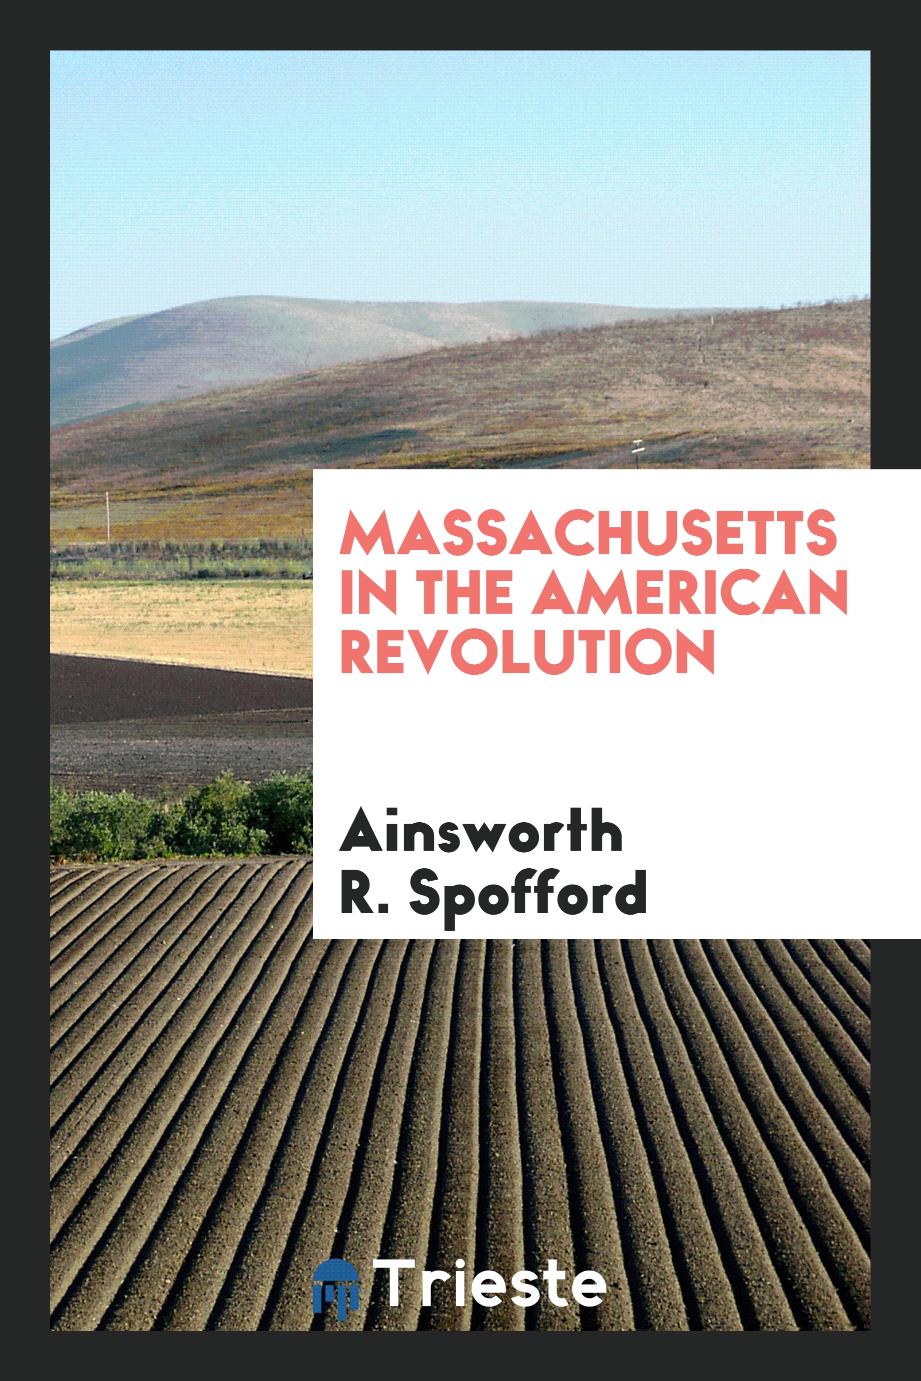 Massachusetts in the American Revolution